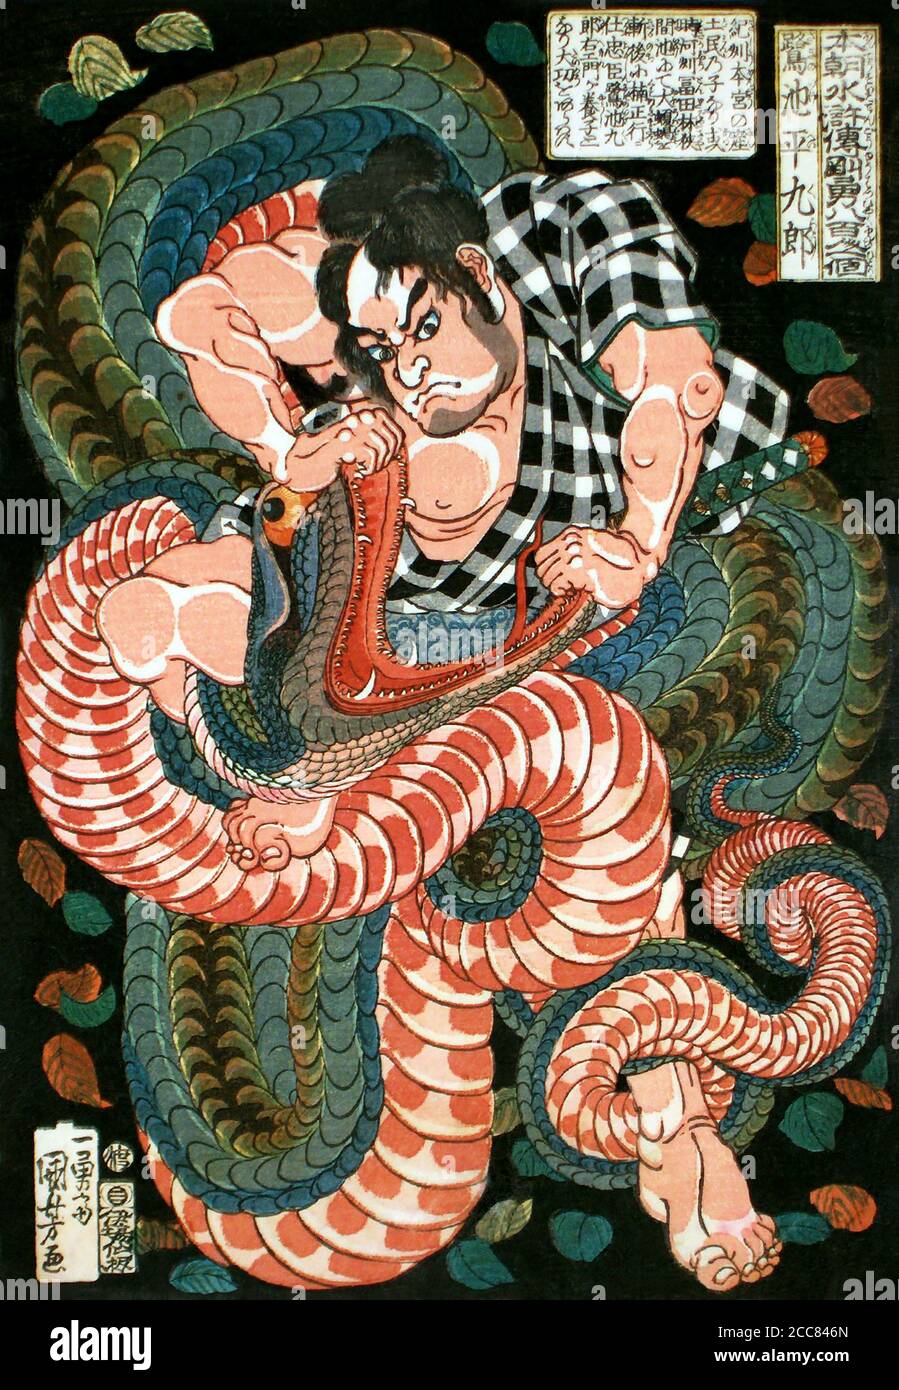 Giappone: Saginoike Heikuro, uno dei 'centootto Eroi del margine d'acqua', combatte il serpente gigante sul lago di Sayama. Utagawa Kuniyoshi (1797-1863), 1827-1830. Il margine d'acqua (conosciuto in cinese come Shuihu Zhuan, talvolta abbreviato in Shuihu, conosciuto come Suikoden in giapponese, così come gli fuorilegge della Marsh, vale delle Marais, tutti gli uomini sono fratelli, uomini delle Marais, O le paludi del Monte Liang in inglese, è un romanzo del XIV secolo e uno dei quattro grandi romanzi classici della letteratura cinese. Attribuito a Shi Nai'an e scritto in cinese vernacolare. Foto Stock